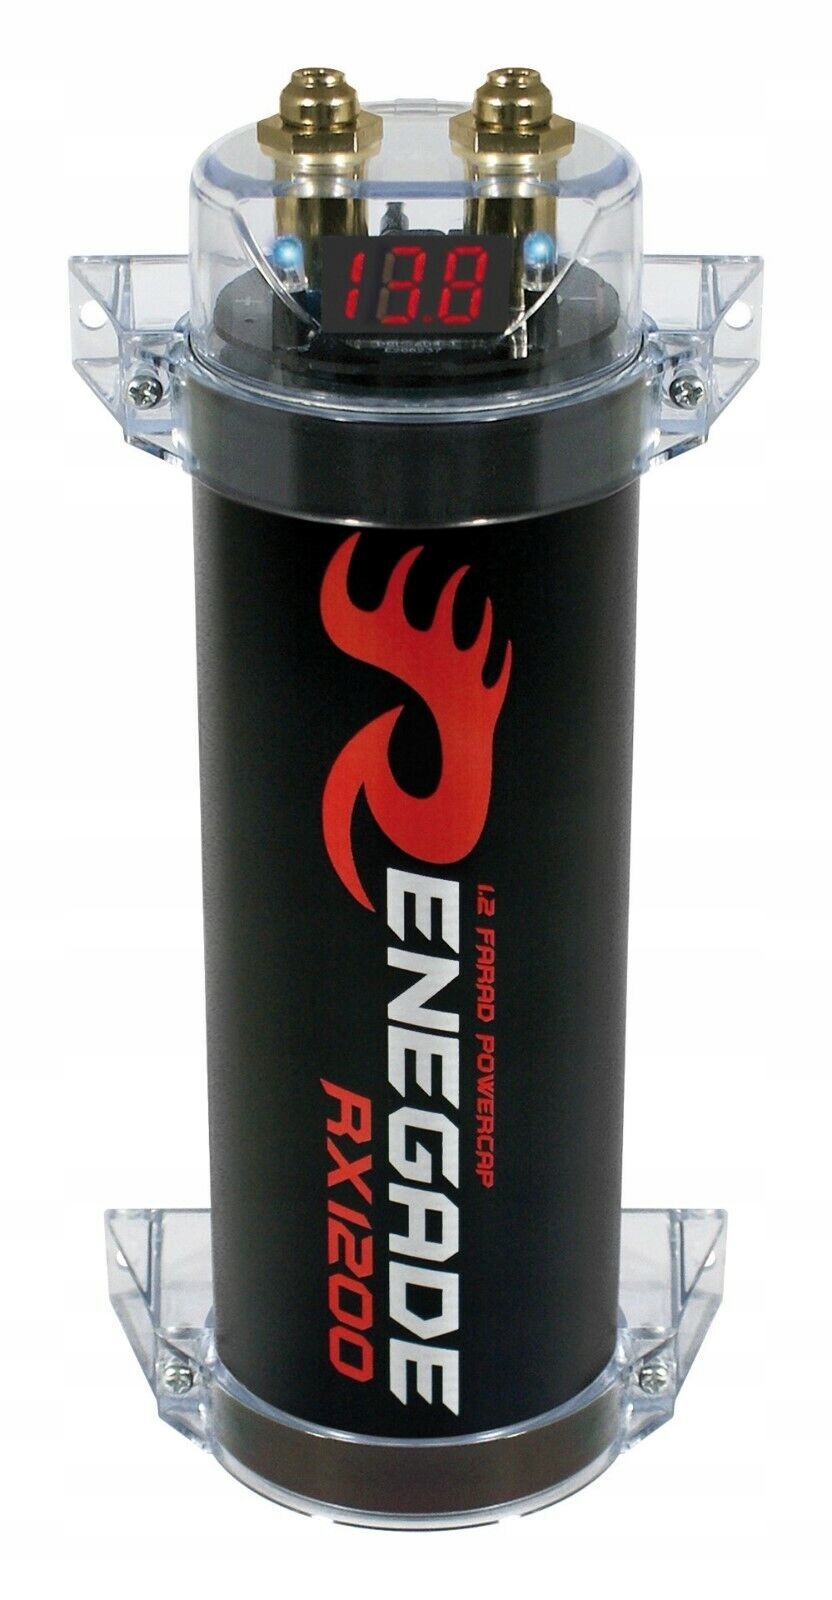 Renegade RX1200 automobilový kondenzátor 1,2F pre automobilový zosilňovač